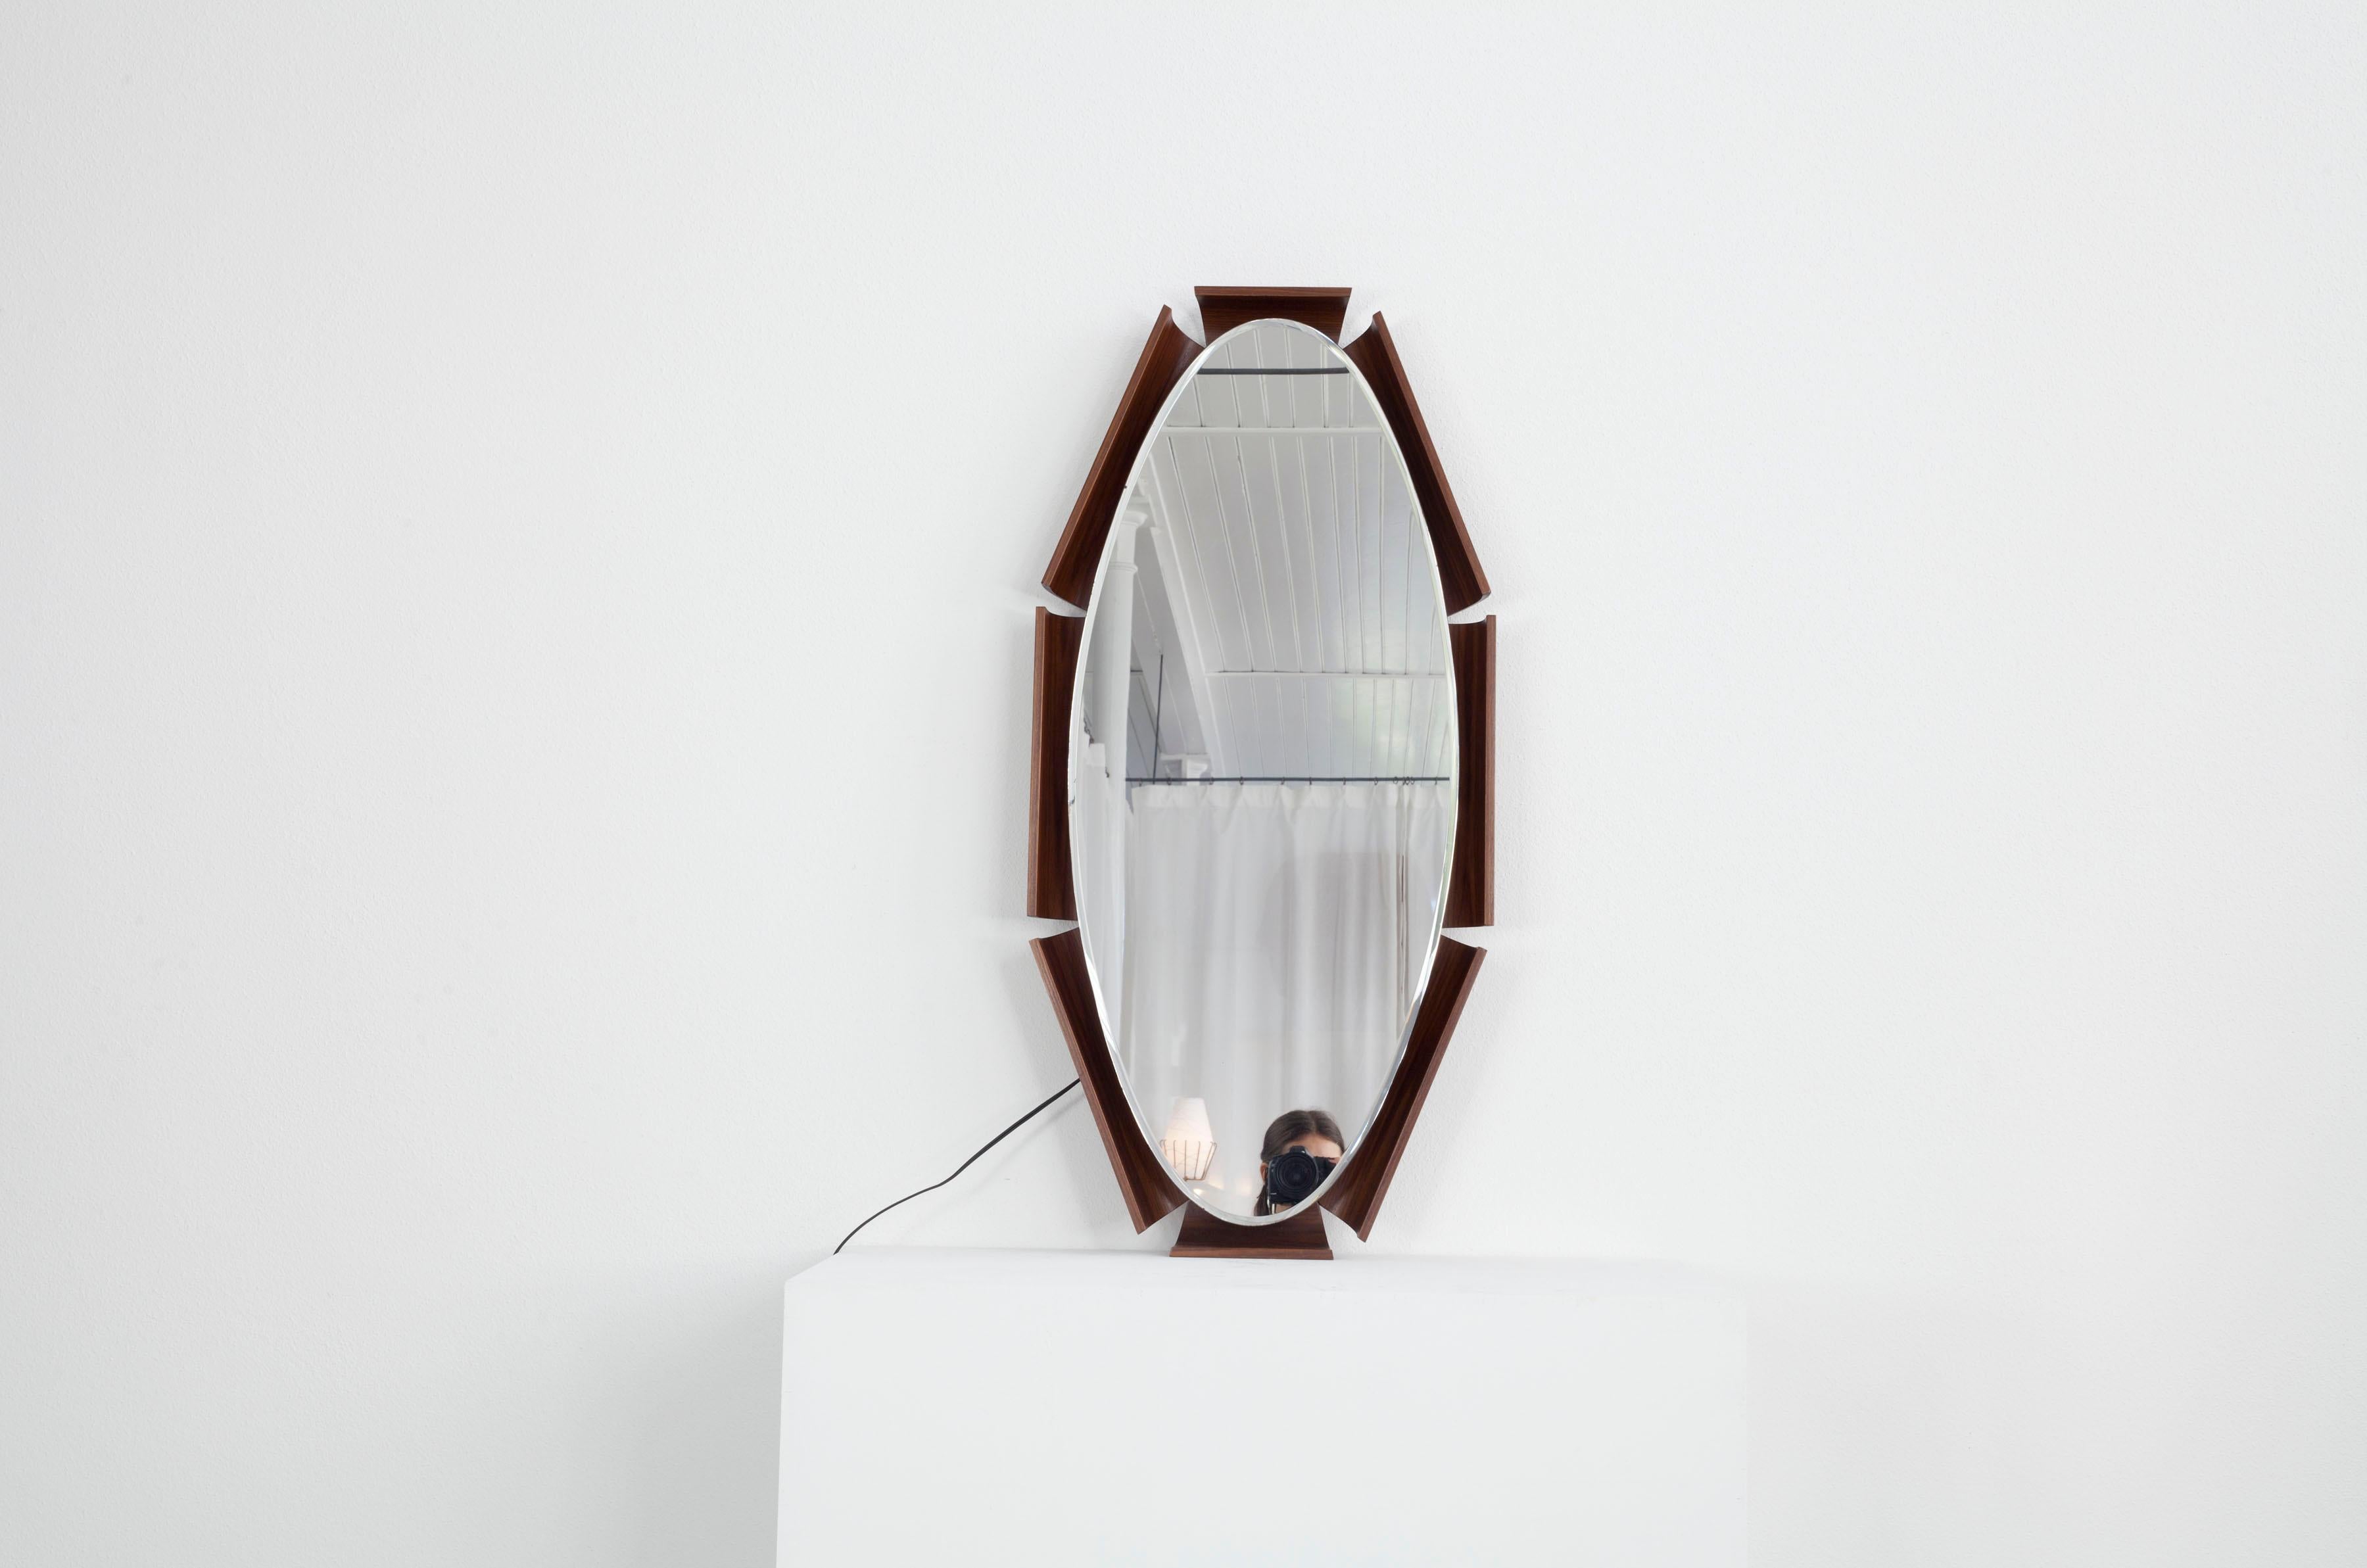 Ovaler Spiegel mit Hintergrundbeleuchtung auf gebogenem Teakholzsperrholzrahmen, Design von I.S.A. Bergamo, 1960er Jahre, guter Zustand.